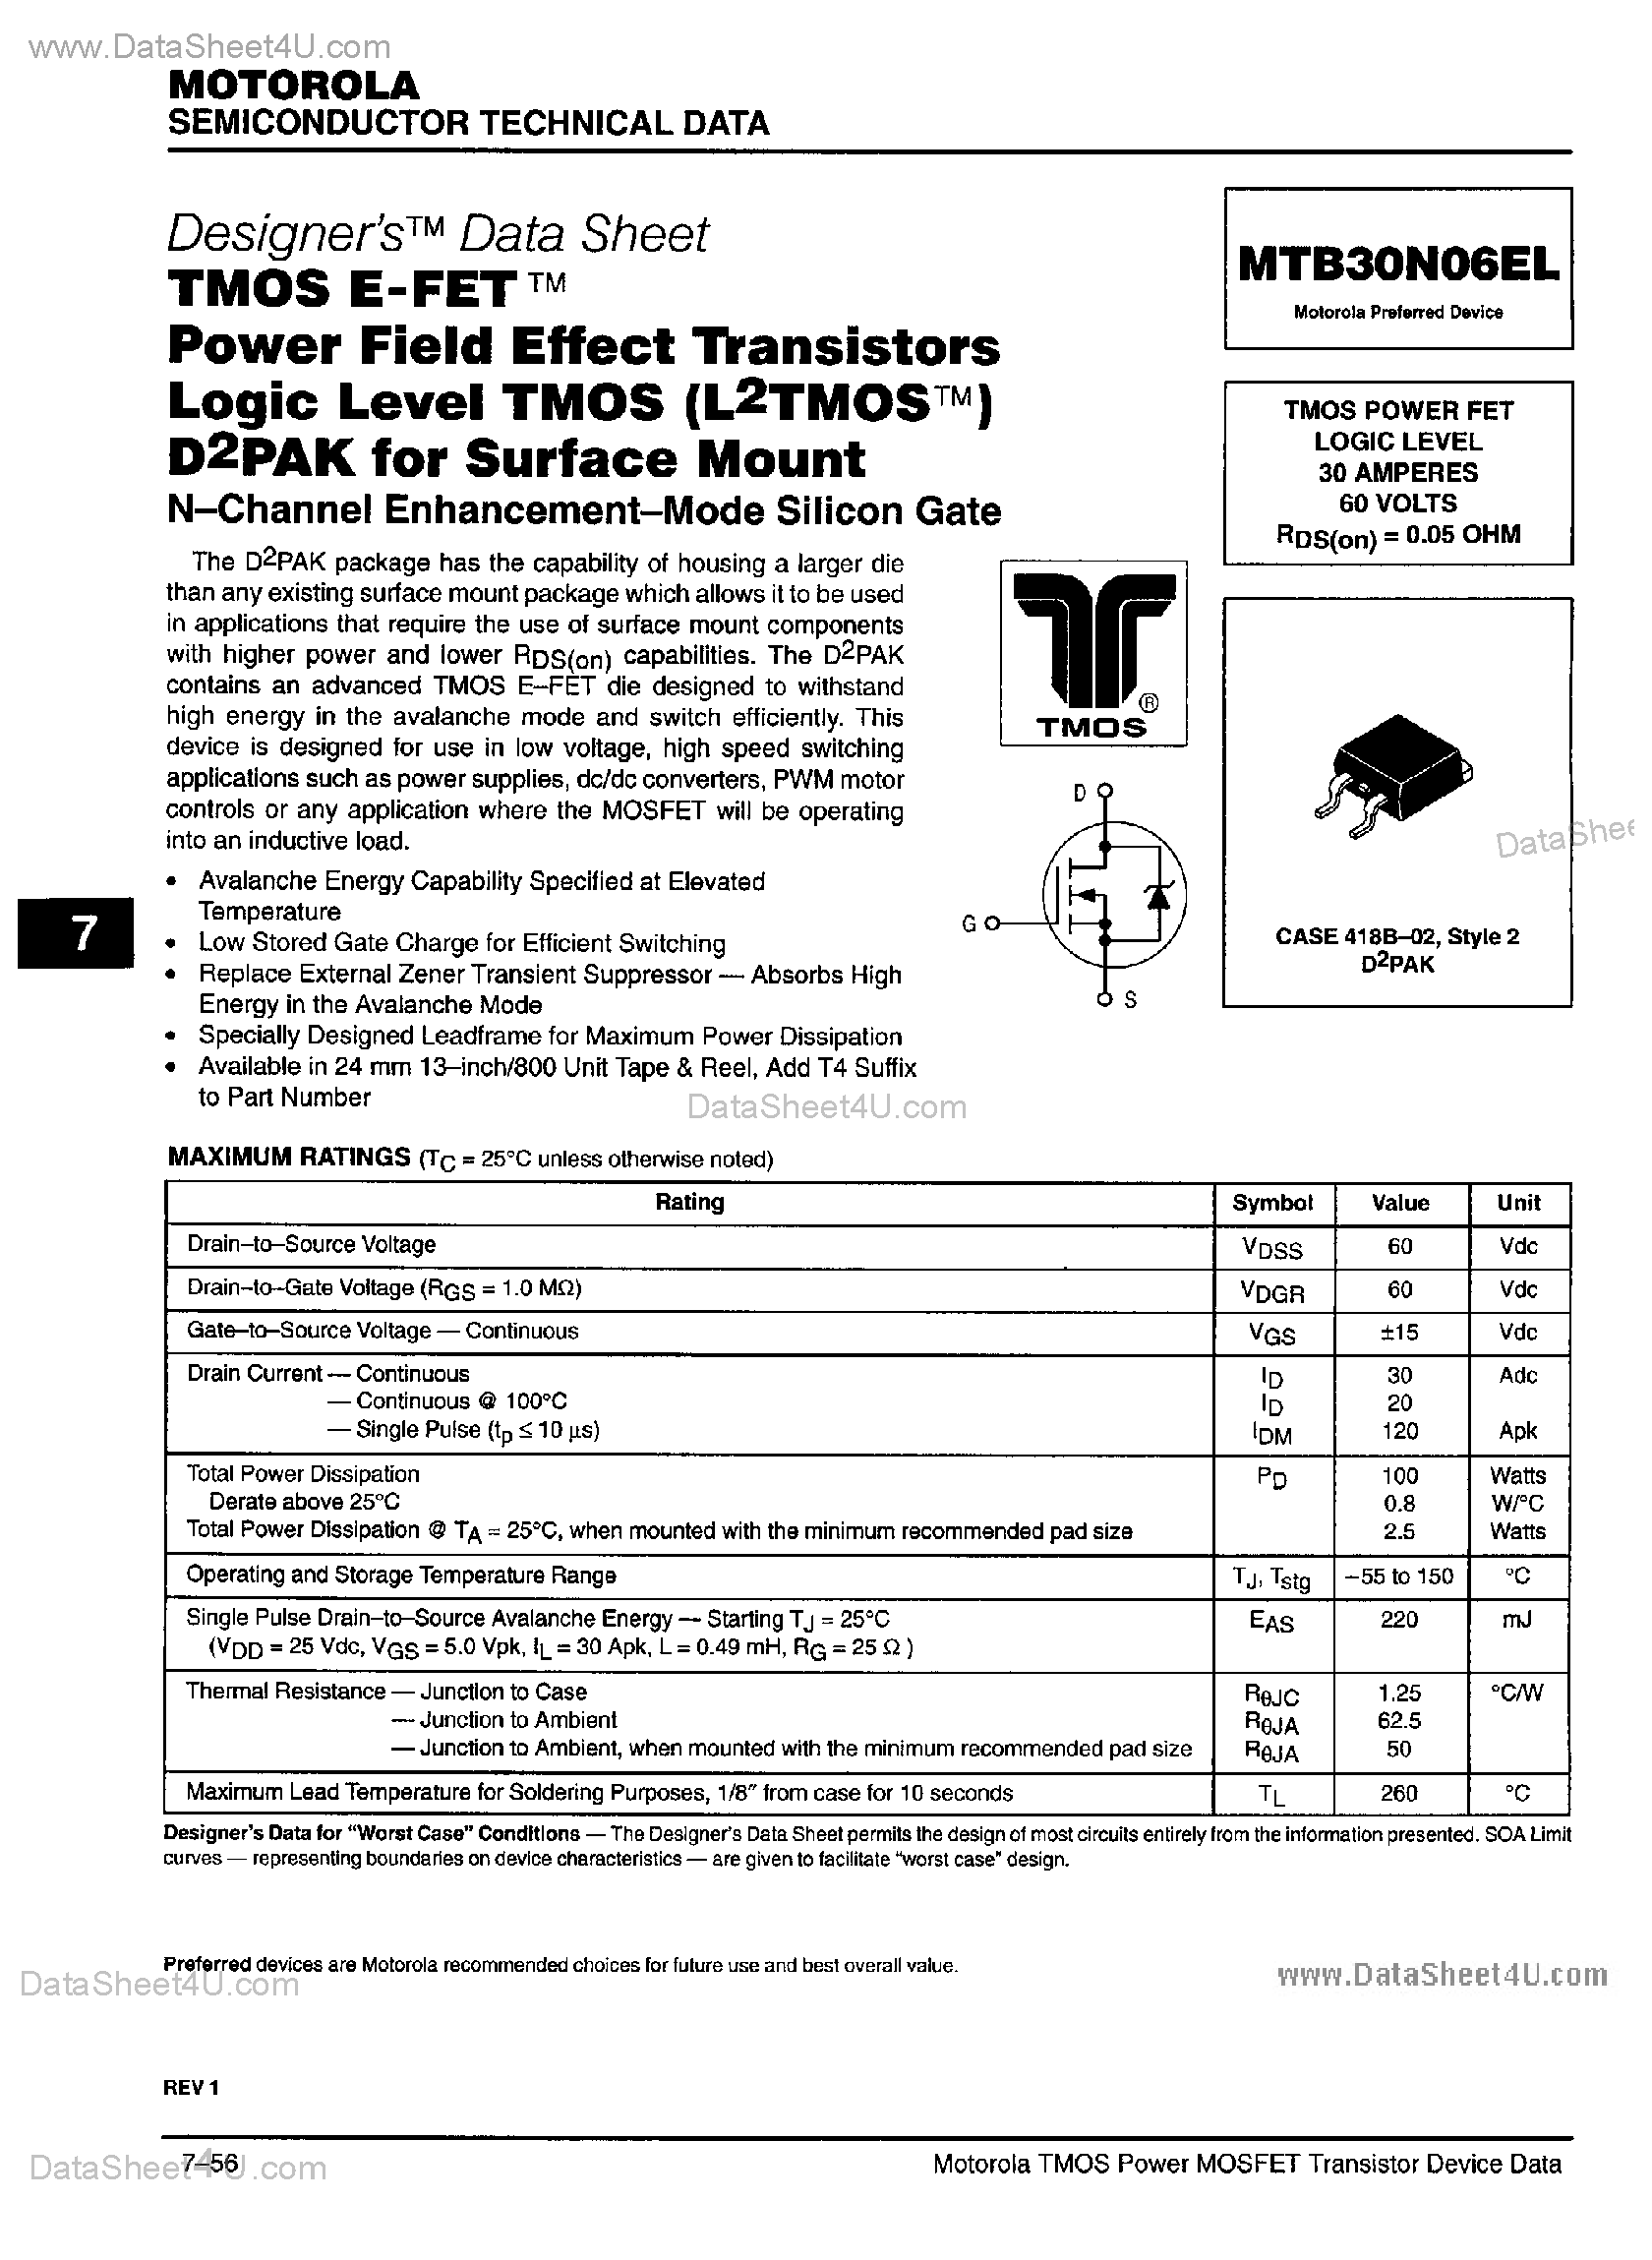 Даташит MTB30N06ELT4 - TMOS Power FET страница 1